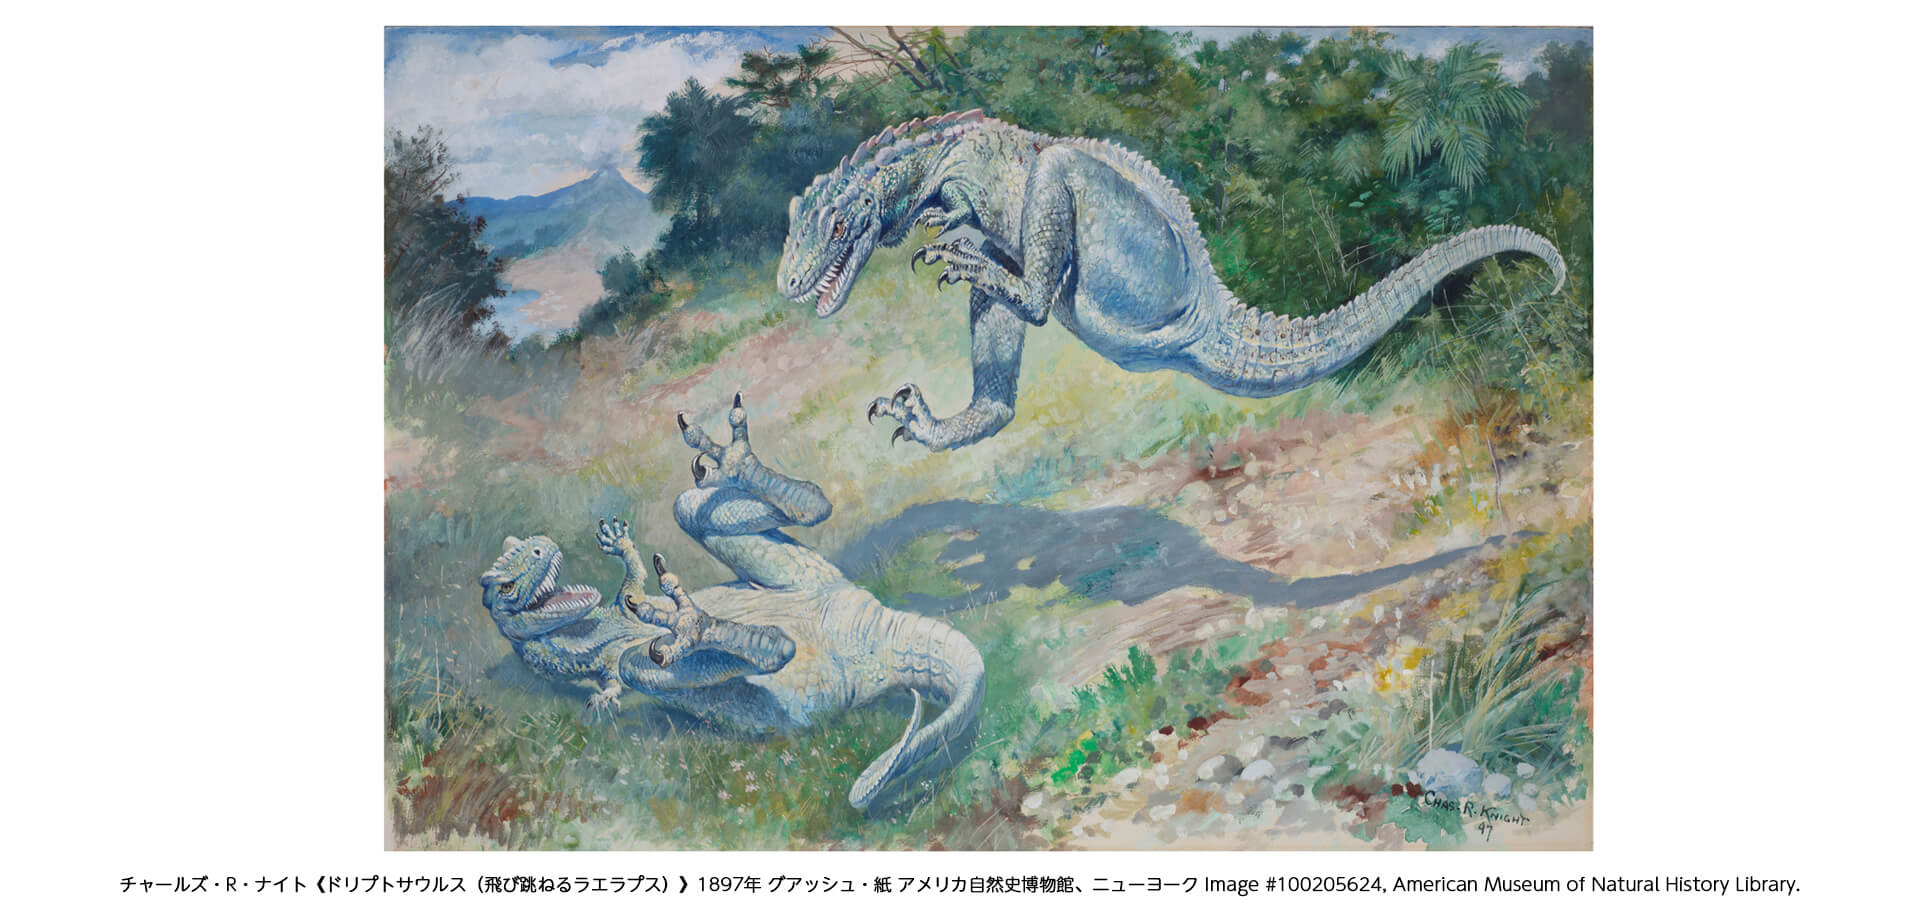 上野の森美術館 美術展「恐竜図鑑―失われた世界の想像／創造」